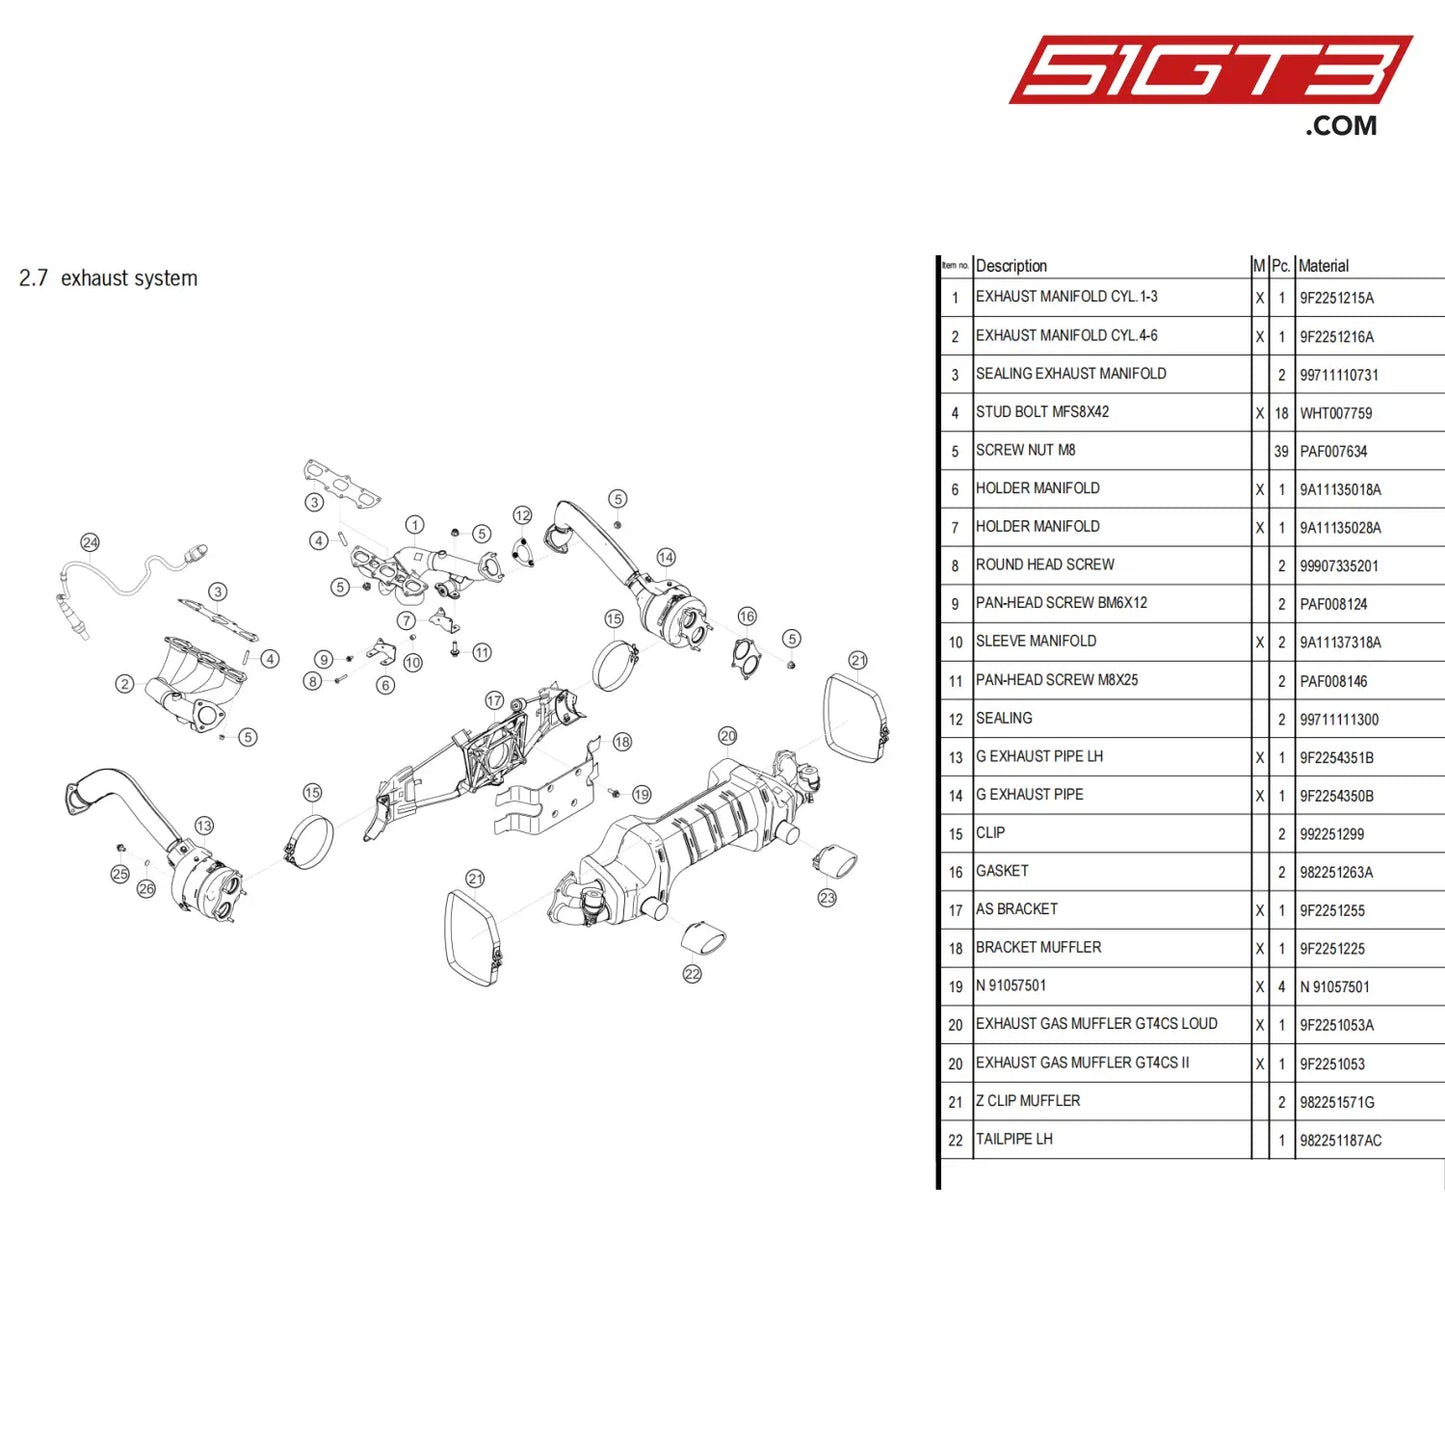 As Bracket - 9F2251255 [Porsche 718 Cayman Gt4 Clubsport] Exhaust System